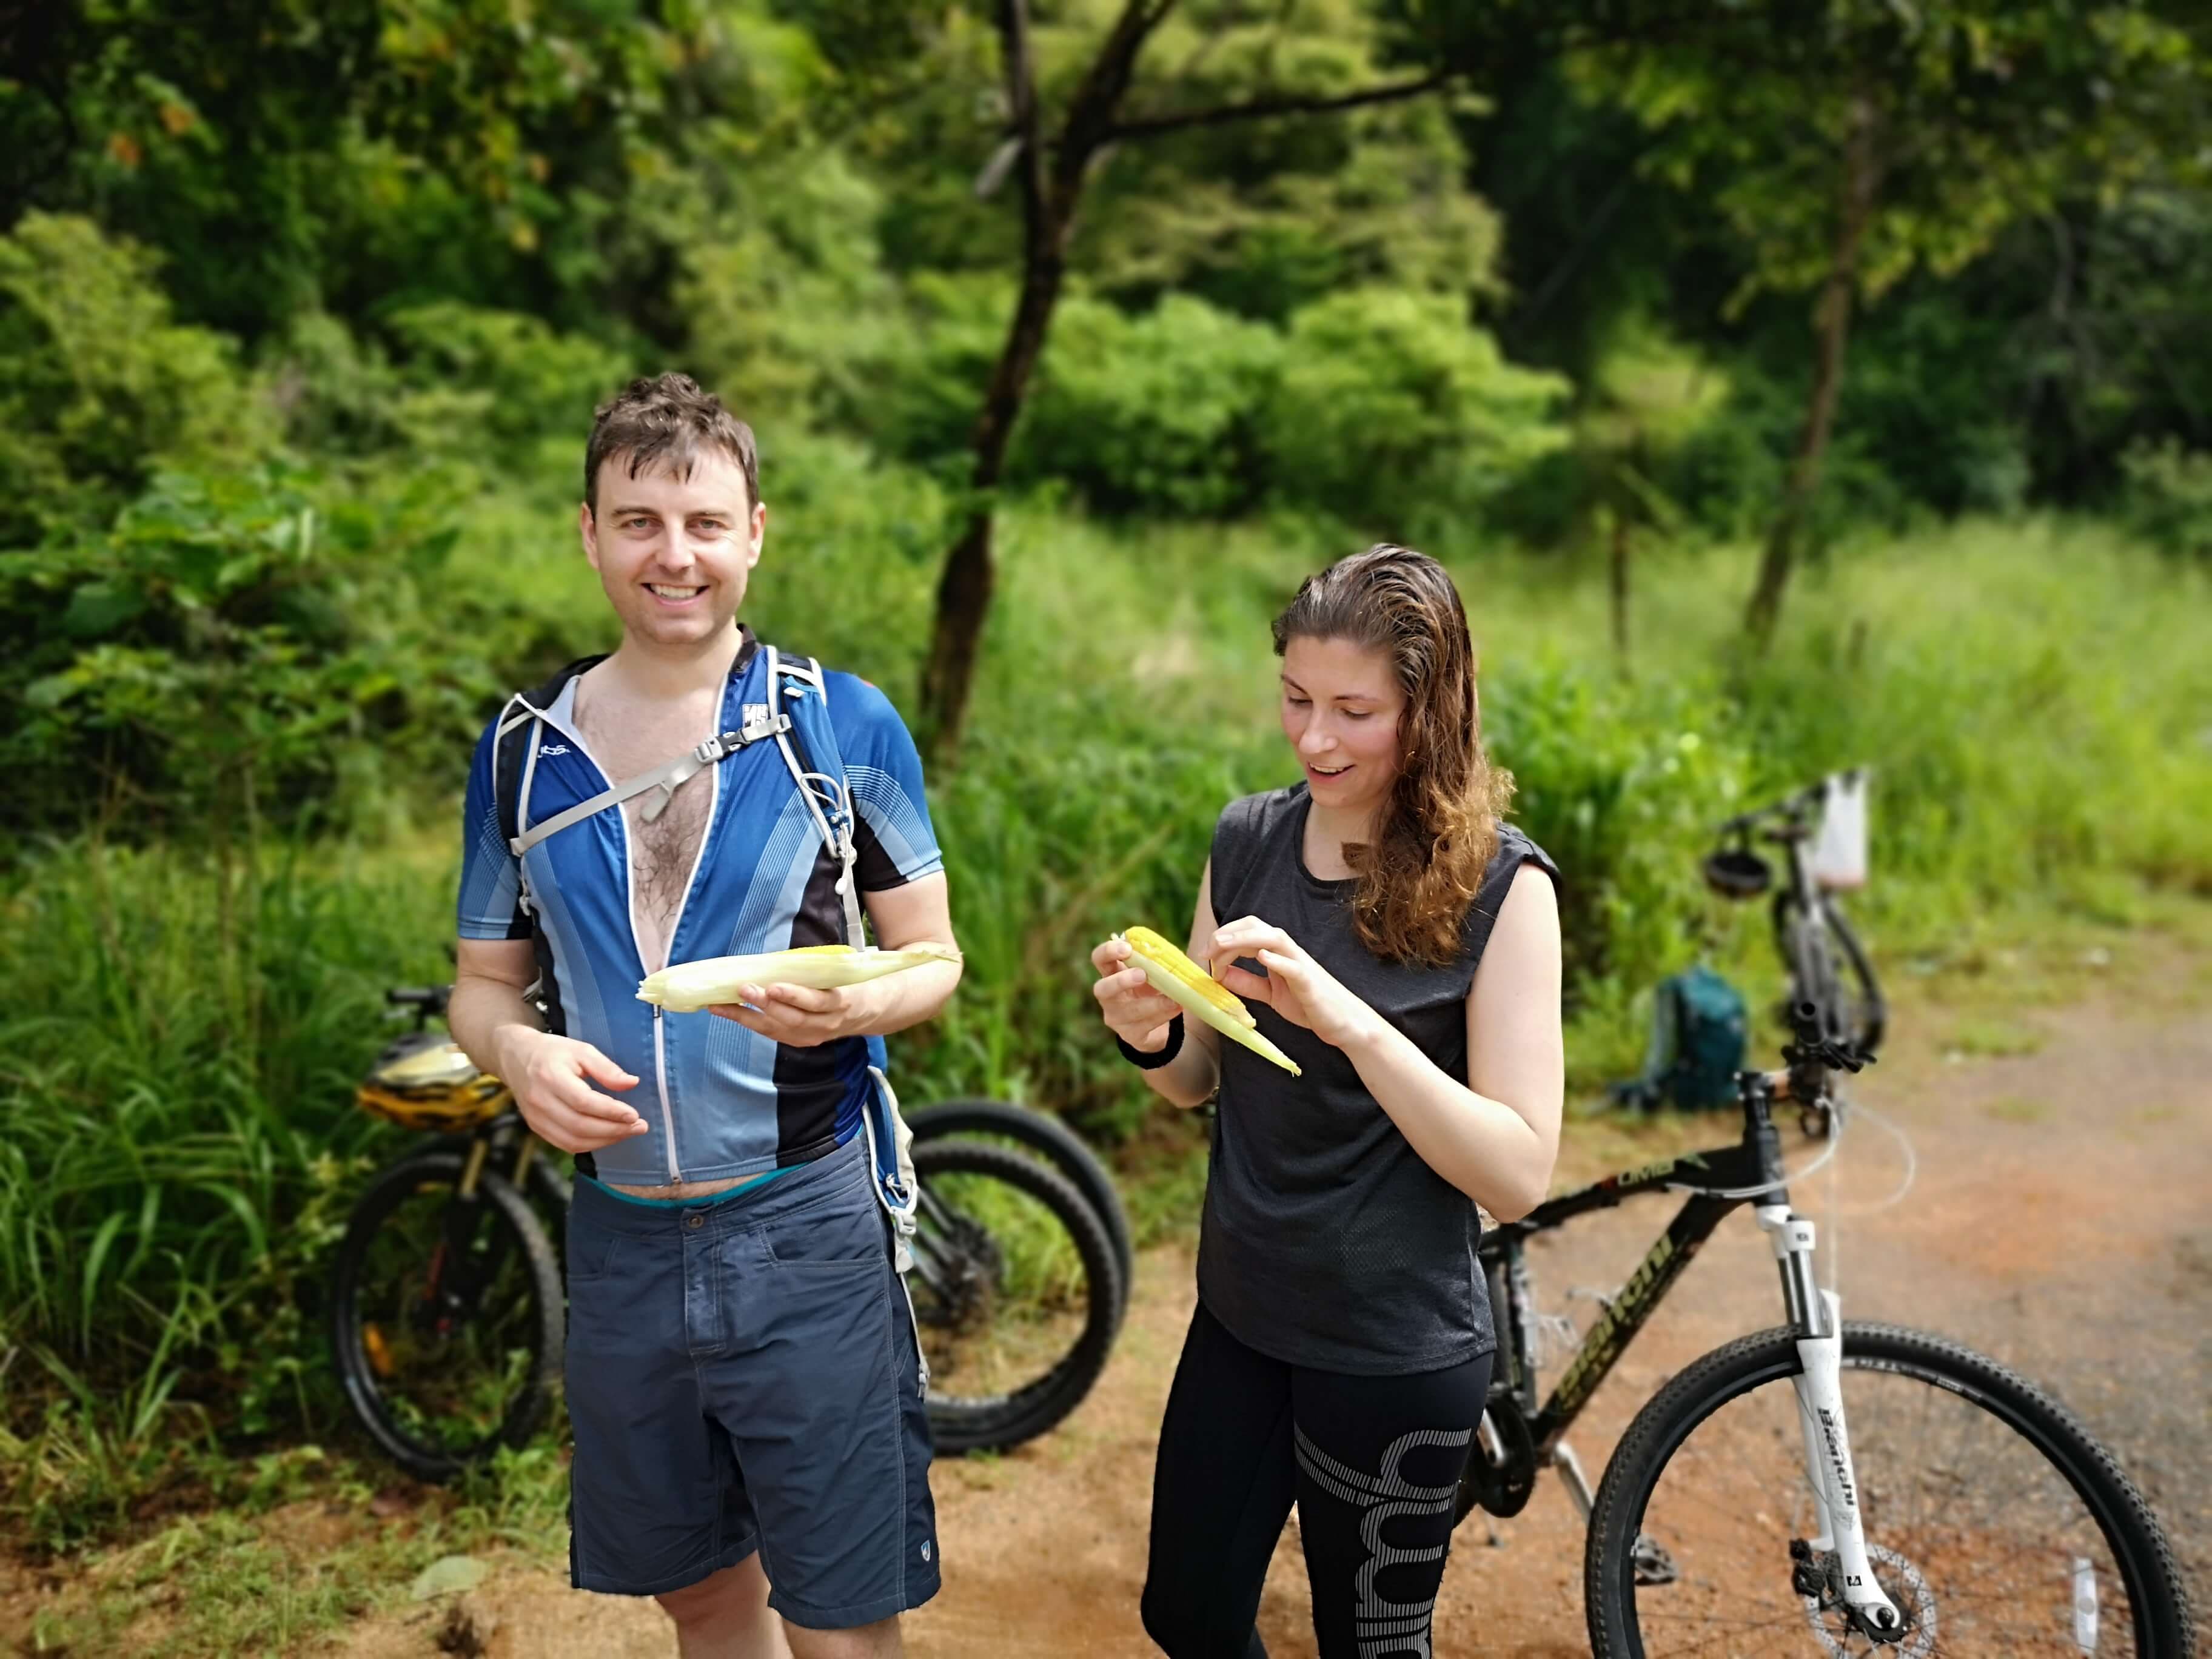 Велосипедная пара наслаждается горячими семенами кукурузы во время велопрогулки в сельской местности Галле, Шри-Ланка.